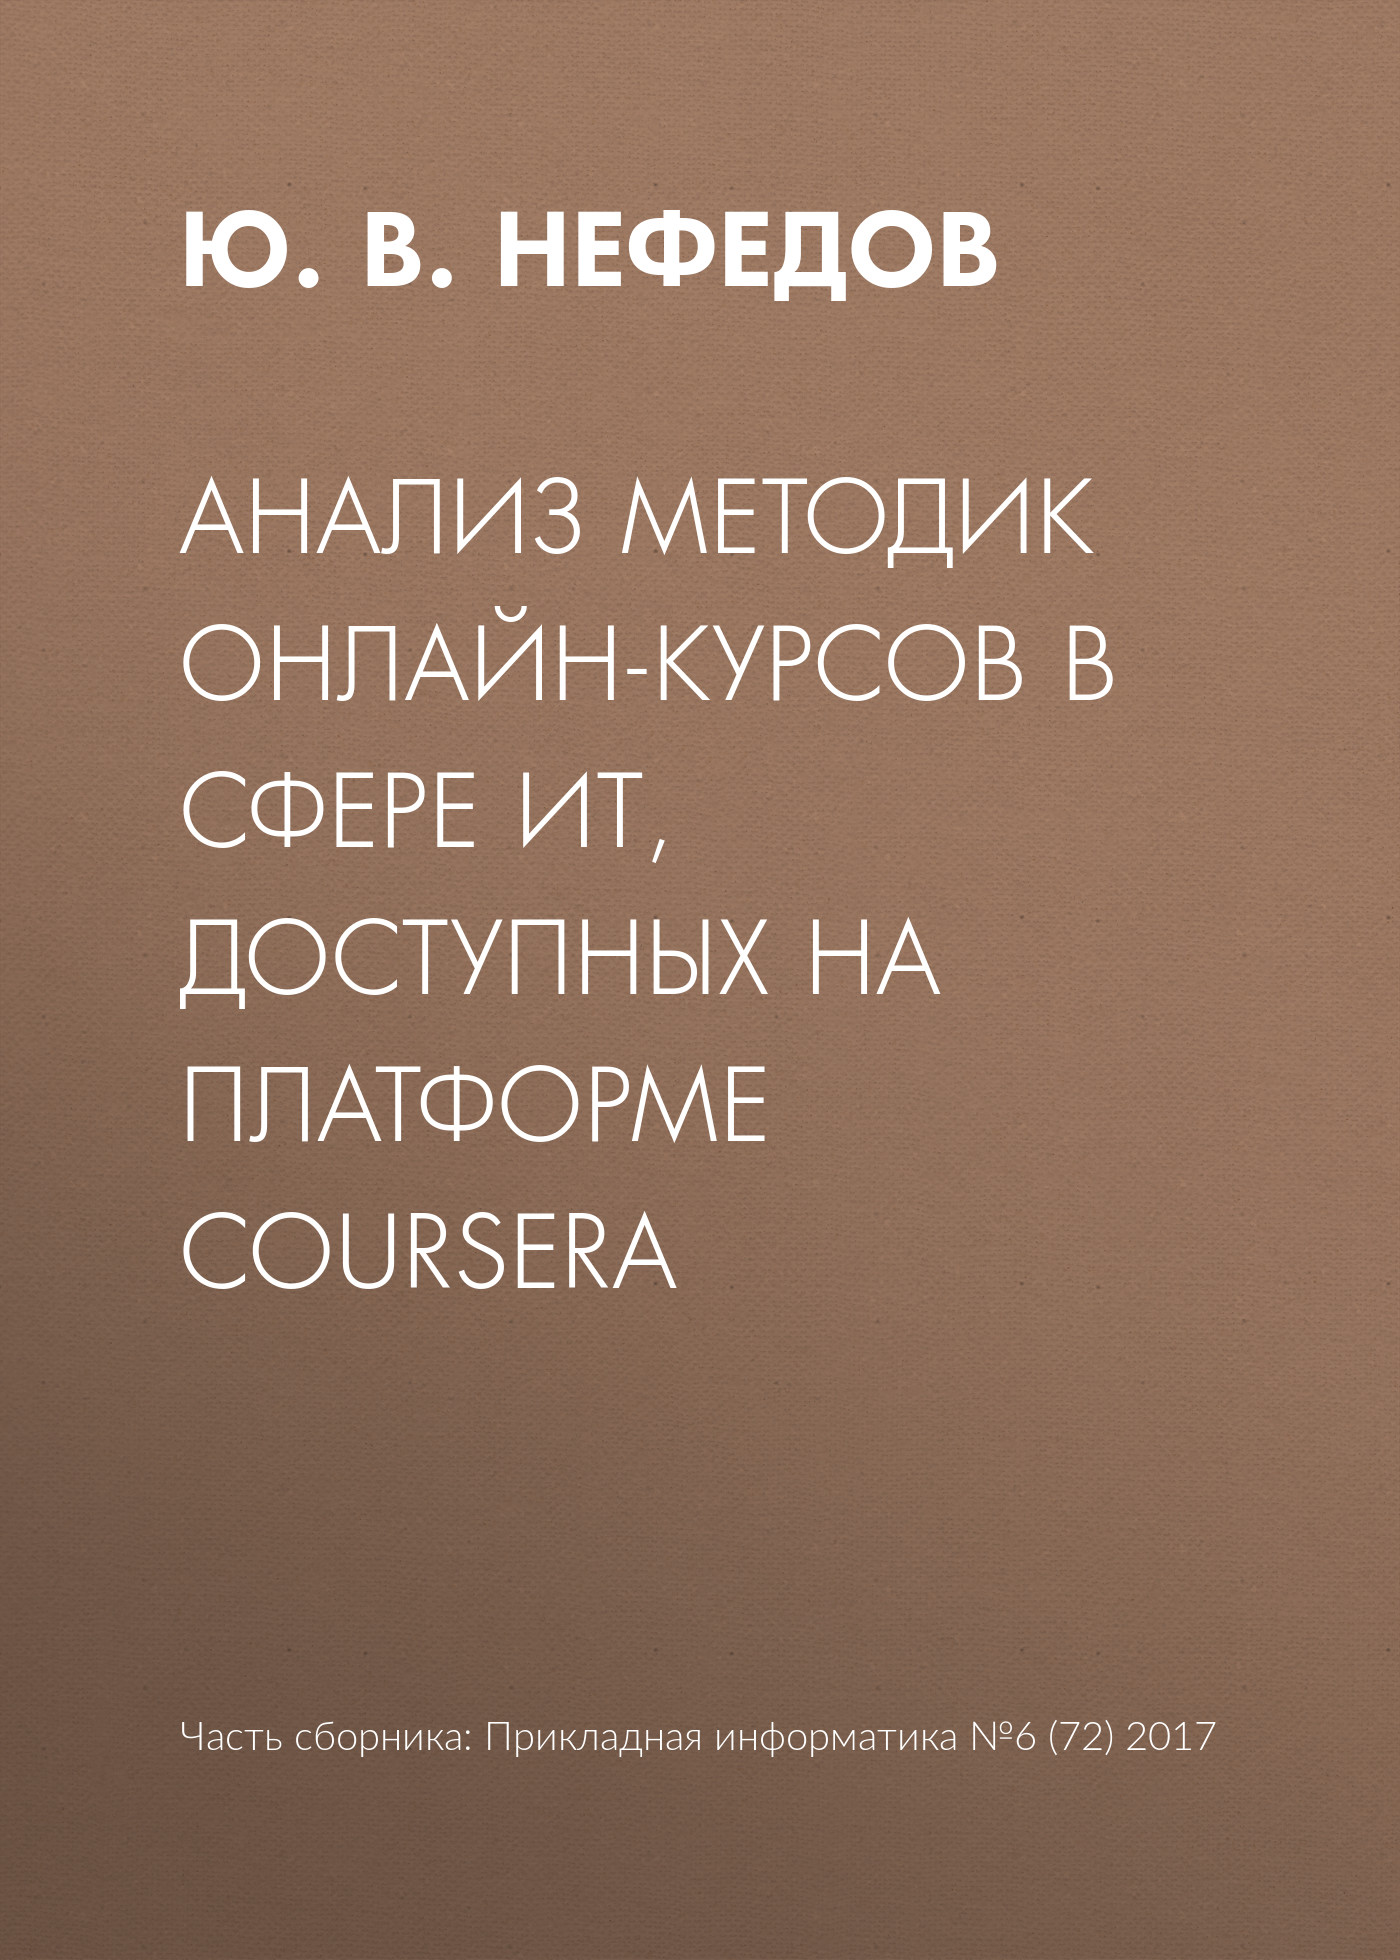 Ю. В. Нефедов Анализ методик онлайн-курсов в сфере ИТ, доступных на платформе Coursera